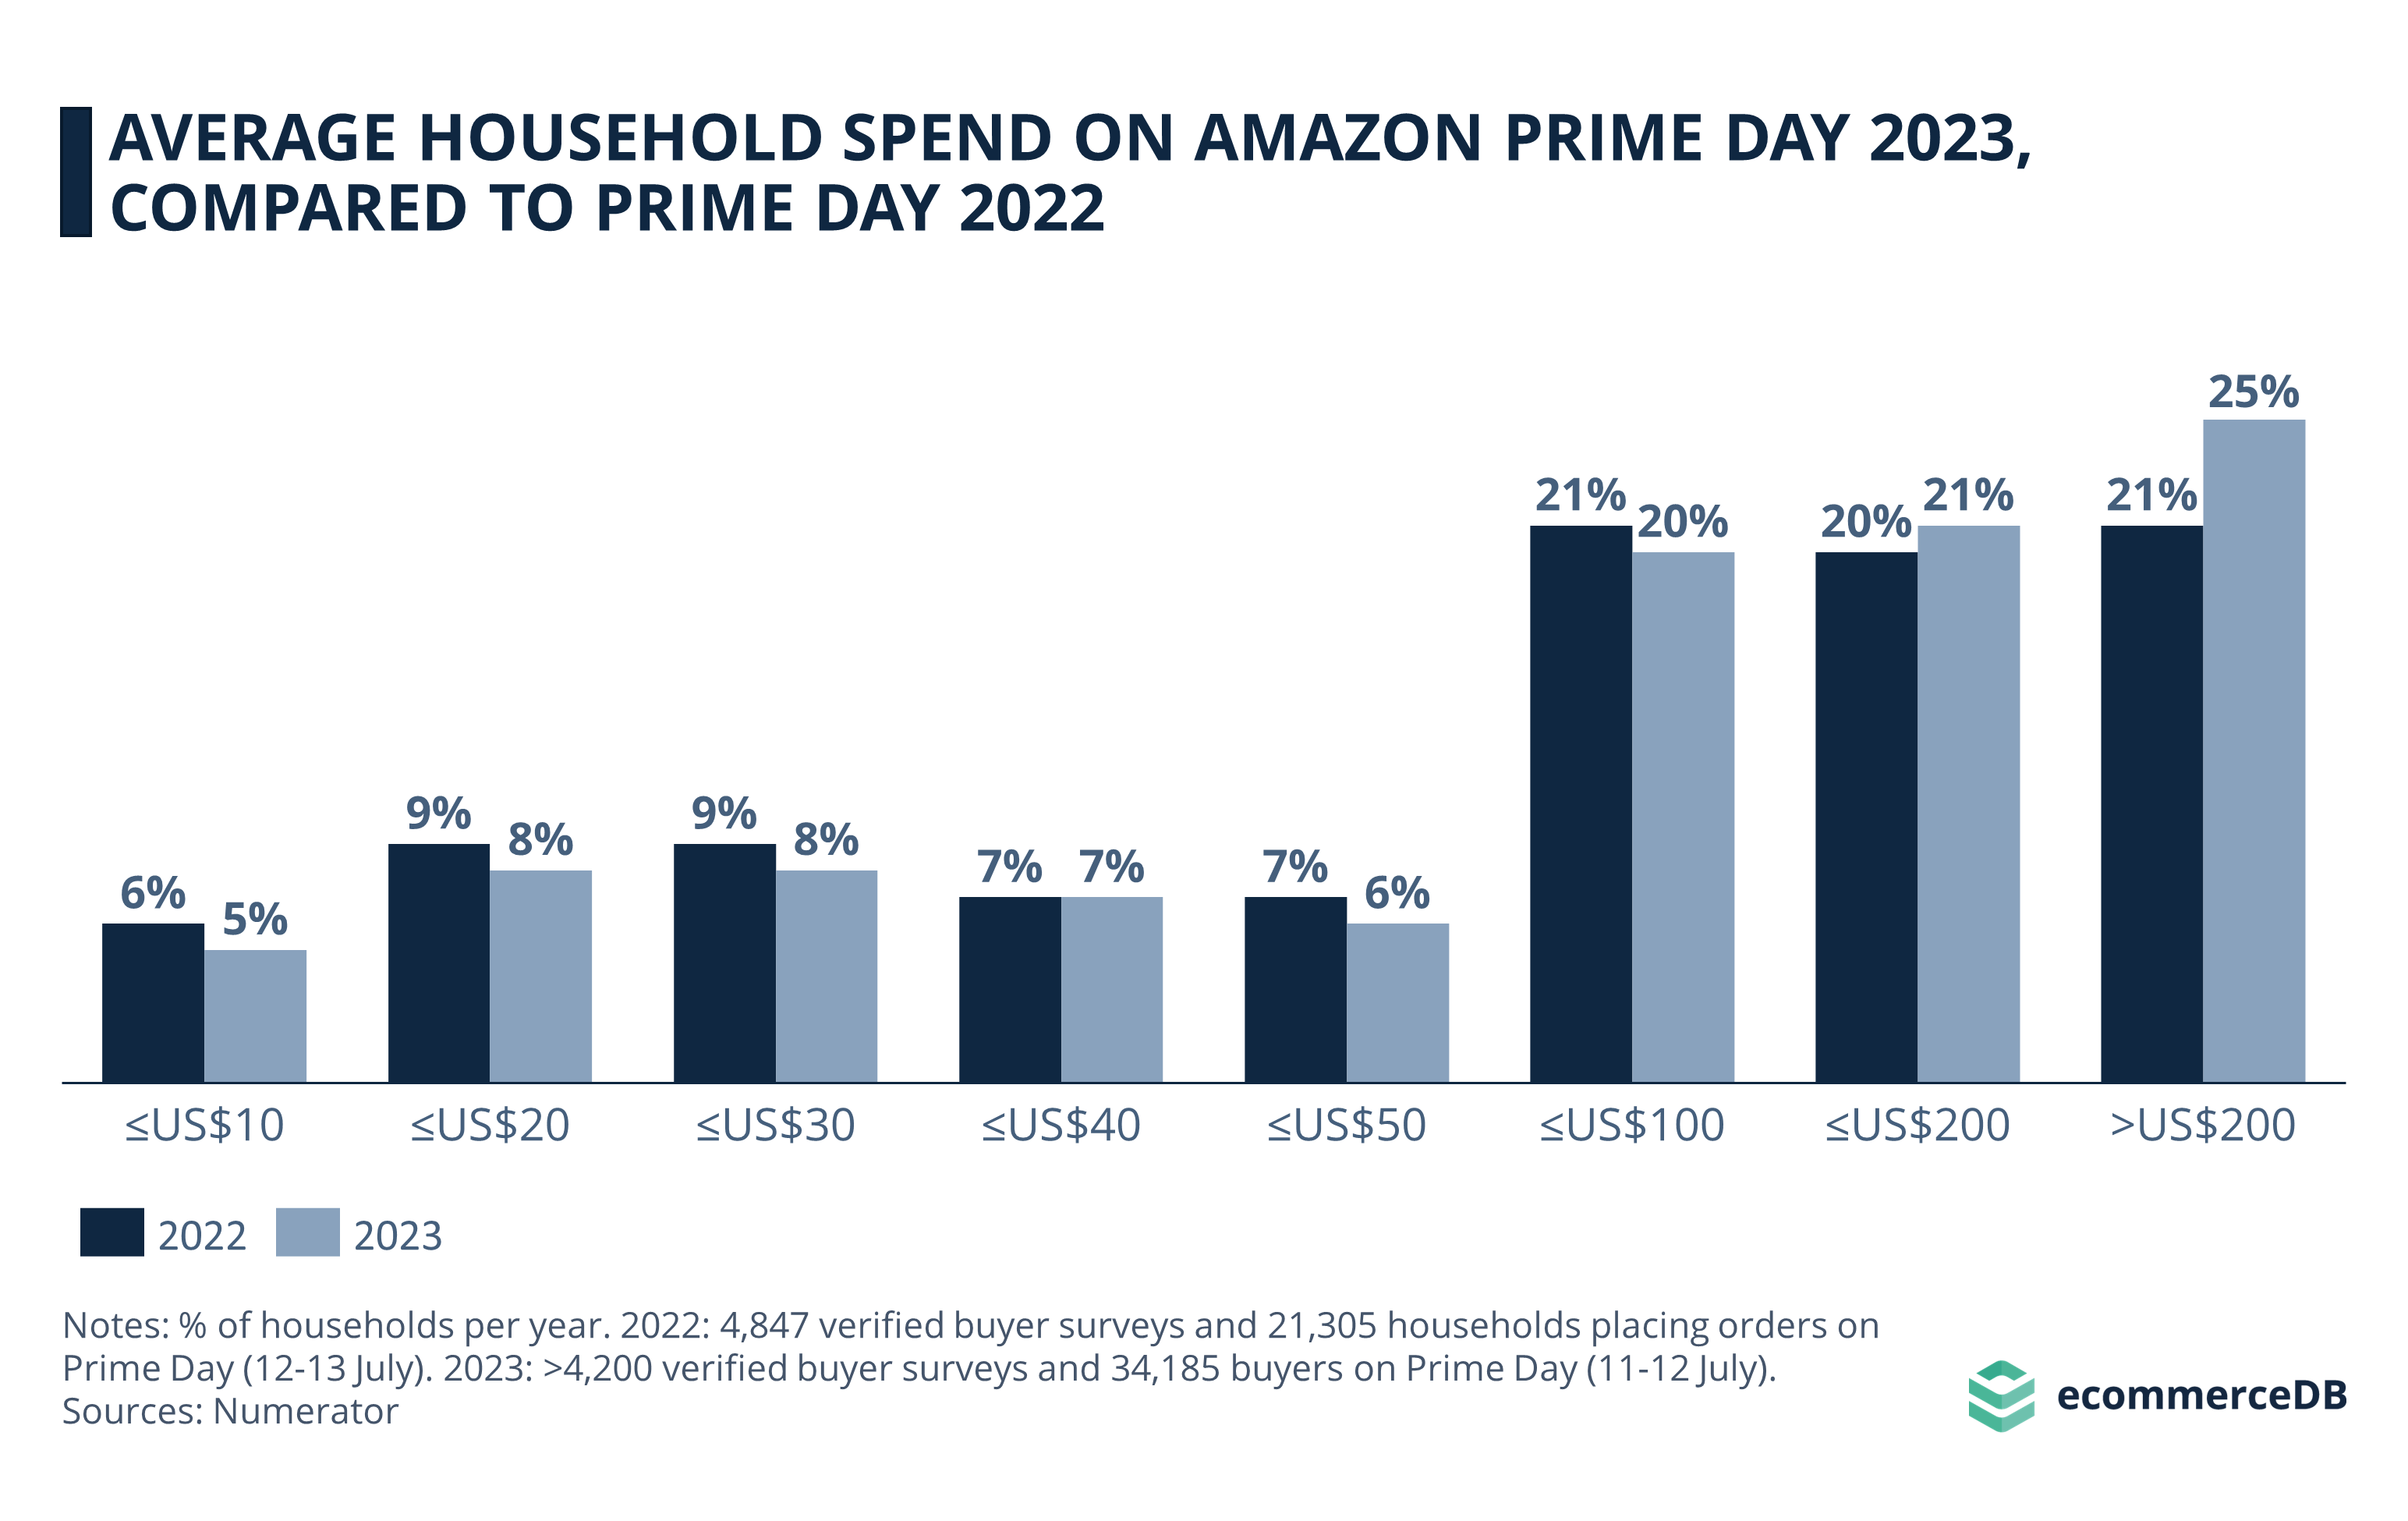 Prime Day 2023 Household Spend vs. 2022